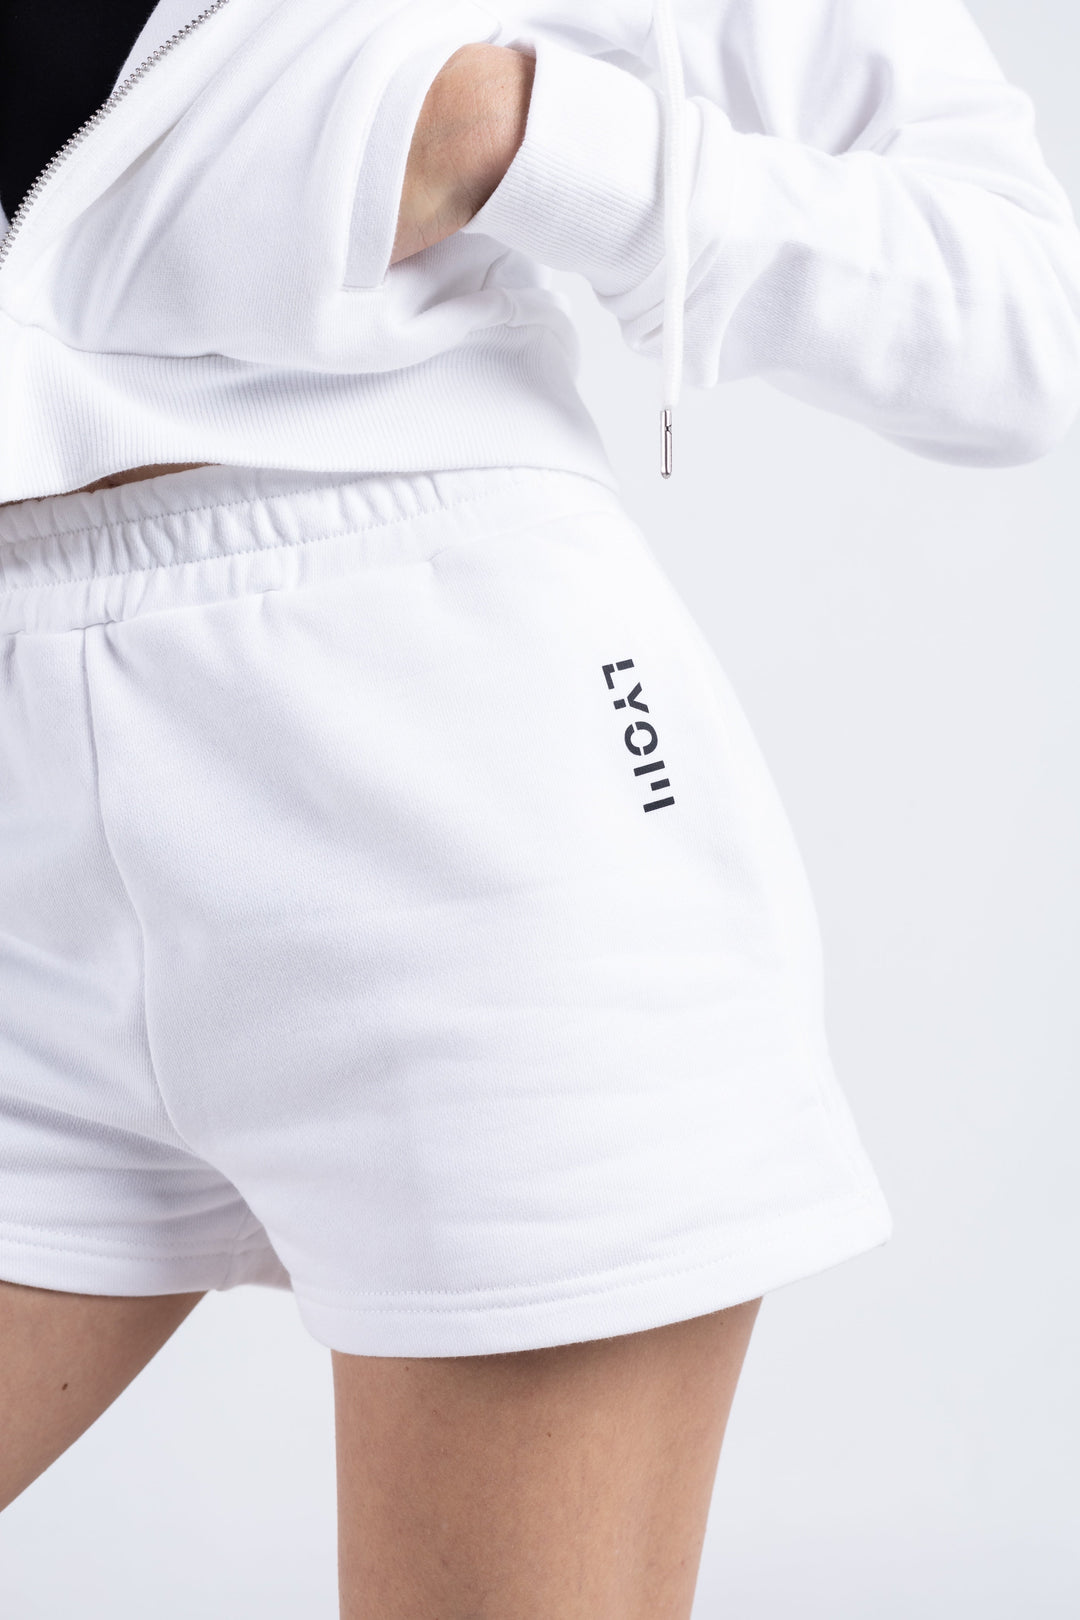 LYOM™ Comfy Dreamy Shorts - White